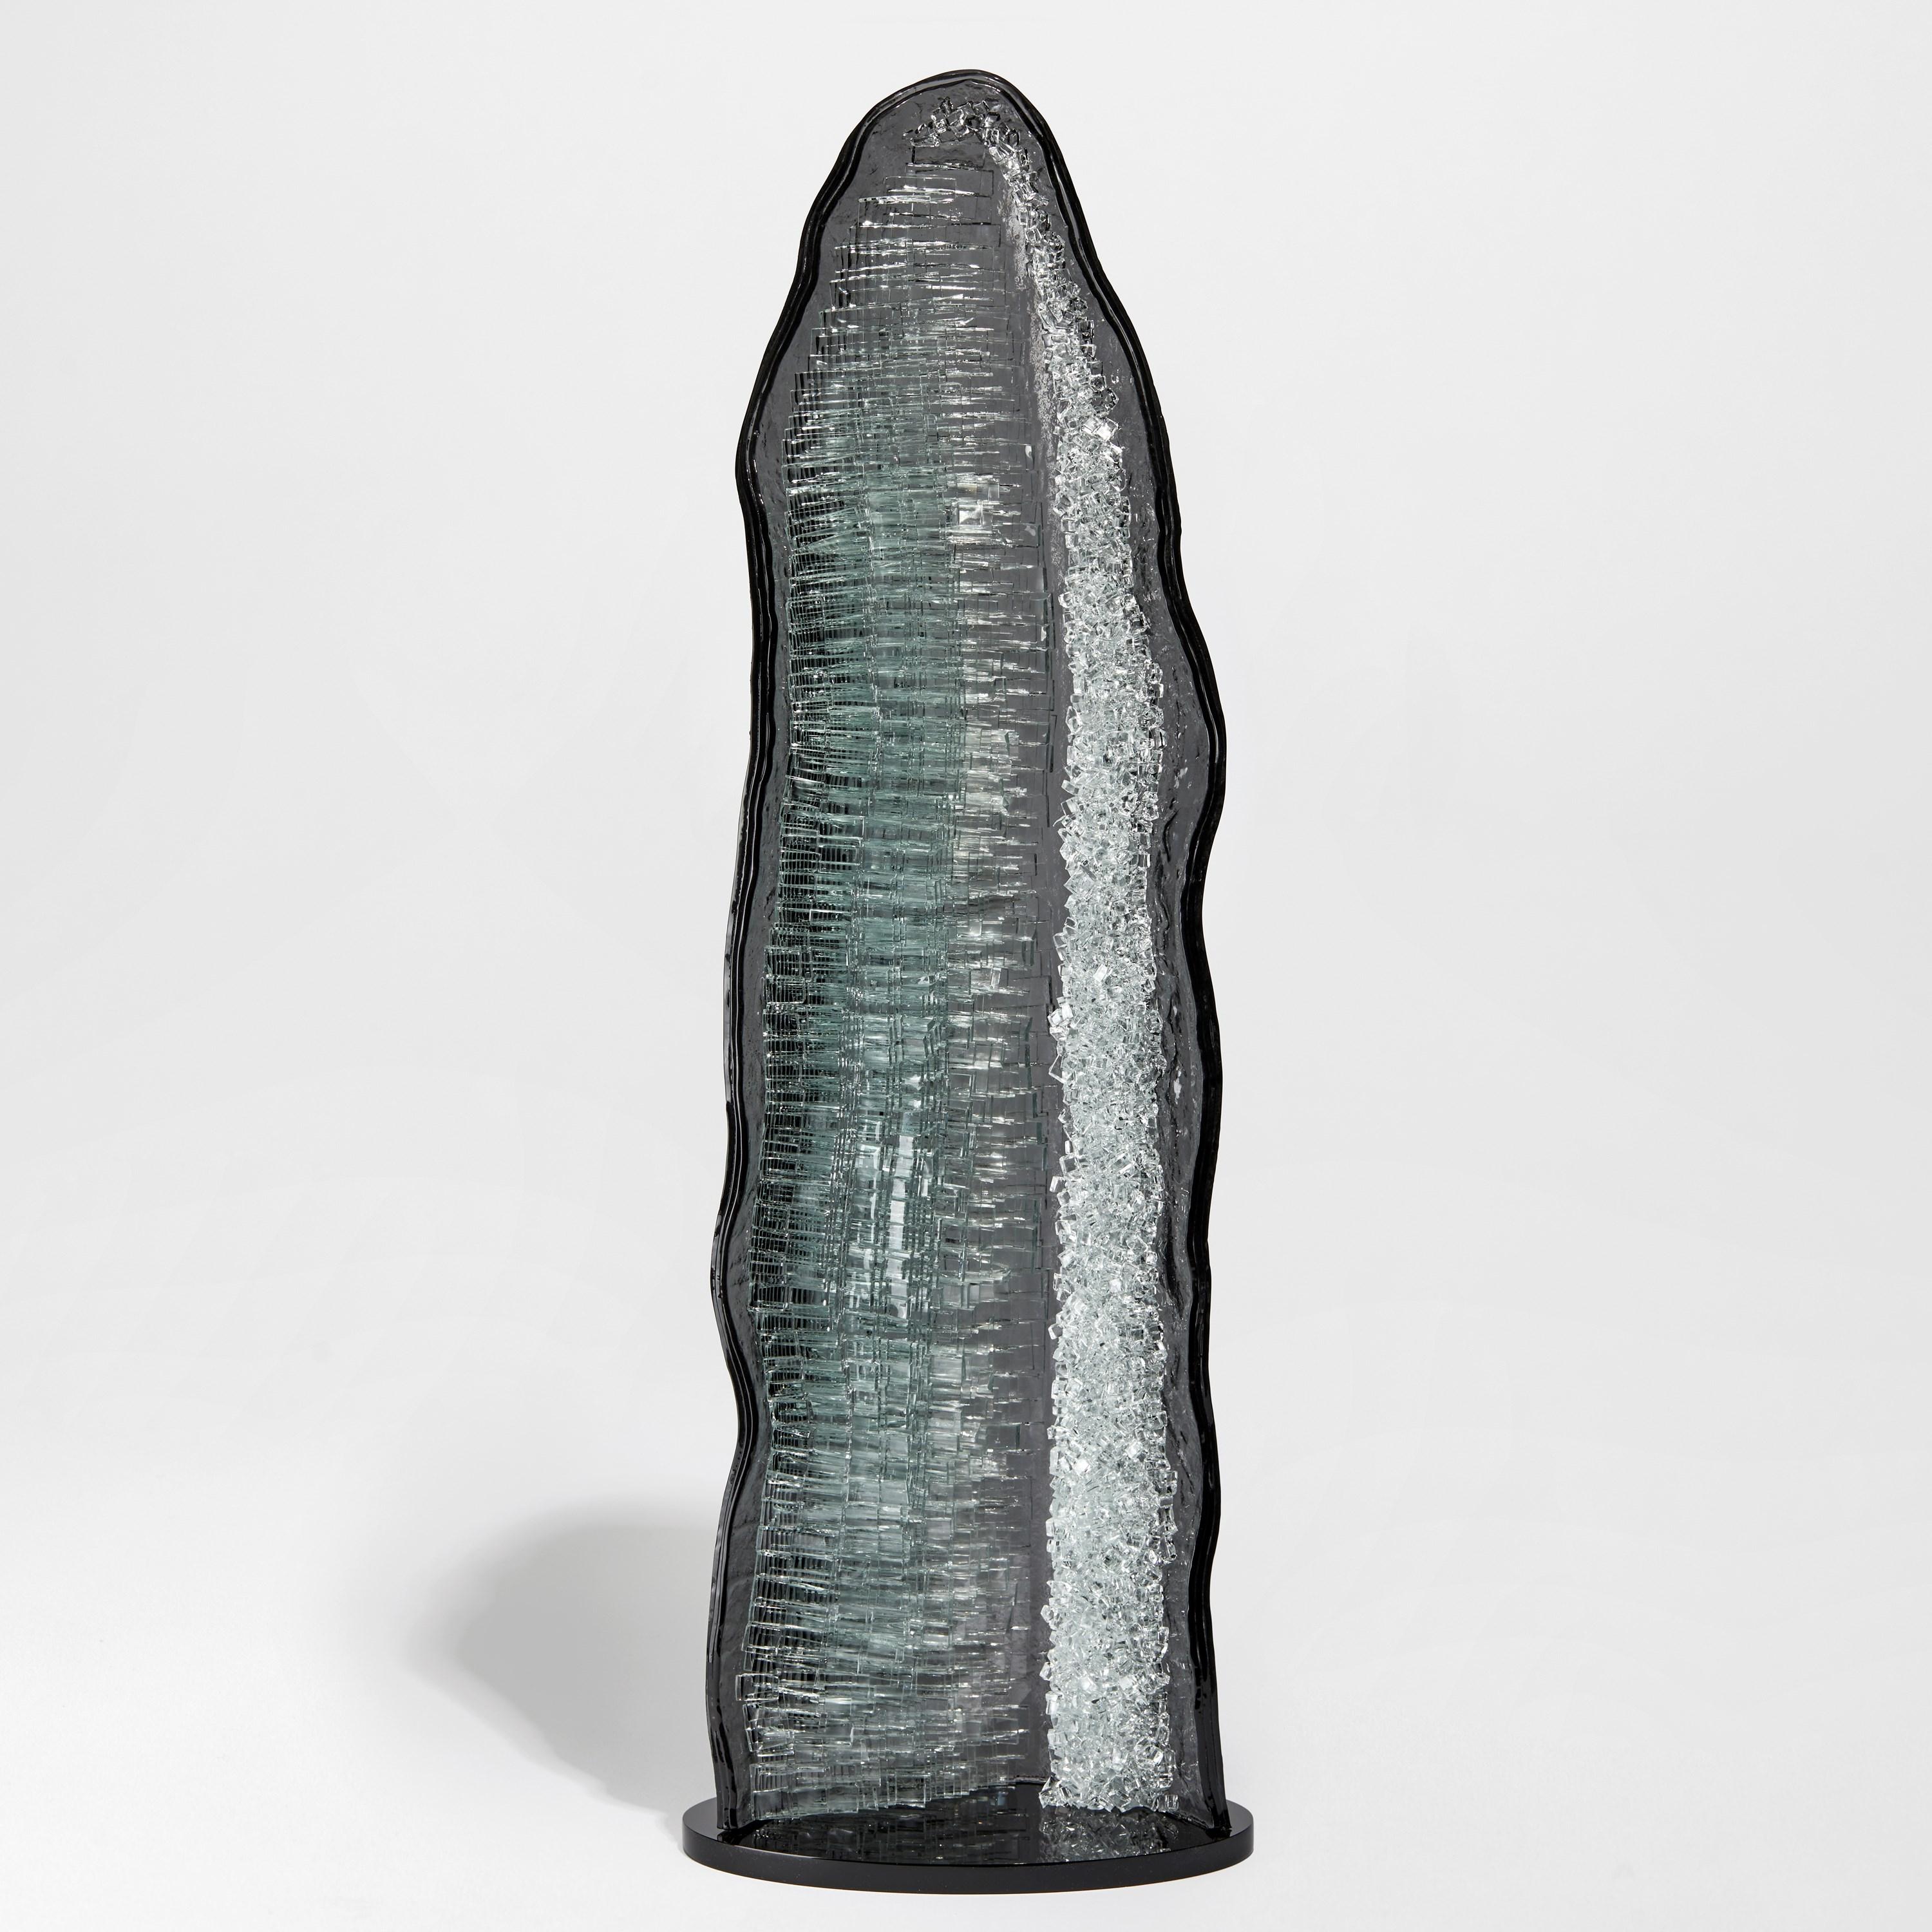 Celestite I ist eine einzigartige graue und klare Glasskulptur des britischen Künstlers Wayne Charmer. Inspiriert von dem Moment, in dem ein Gesteinsbrocken buchstäblich aufgesprengt wird, um einen Teppich aus funkelnden Edelsteinen freizulegen, hat